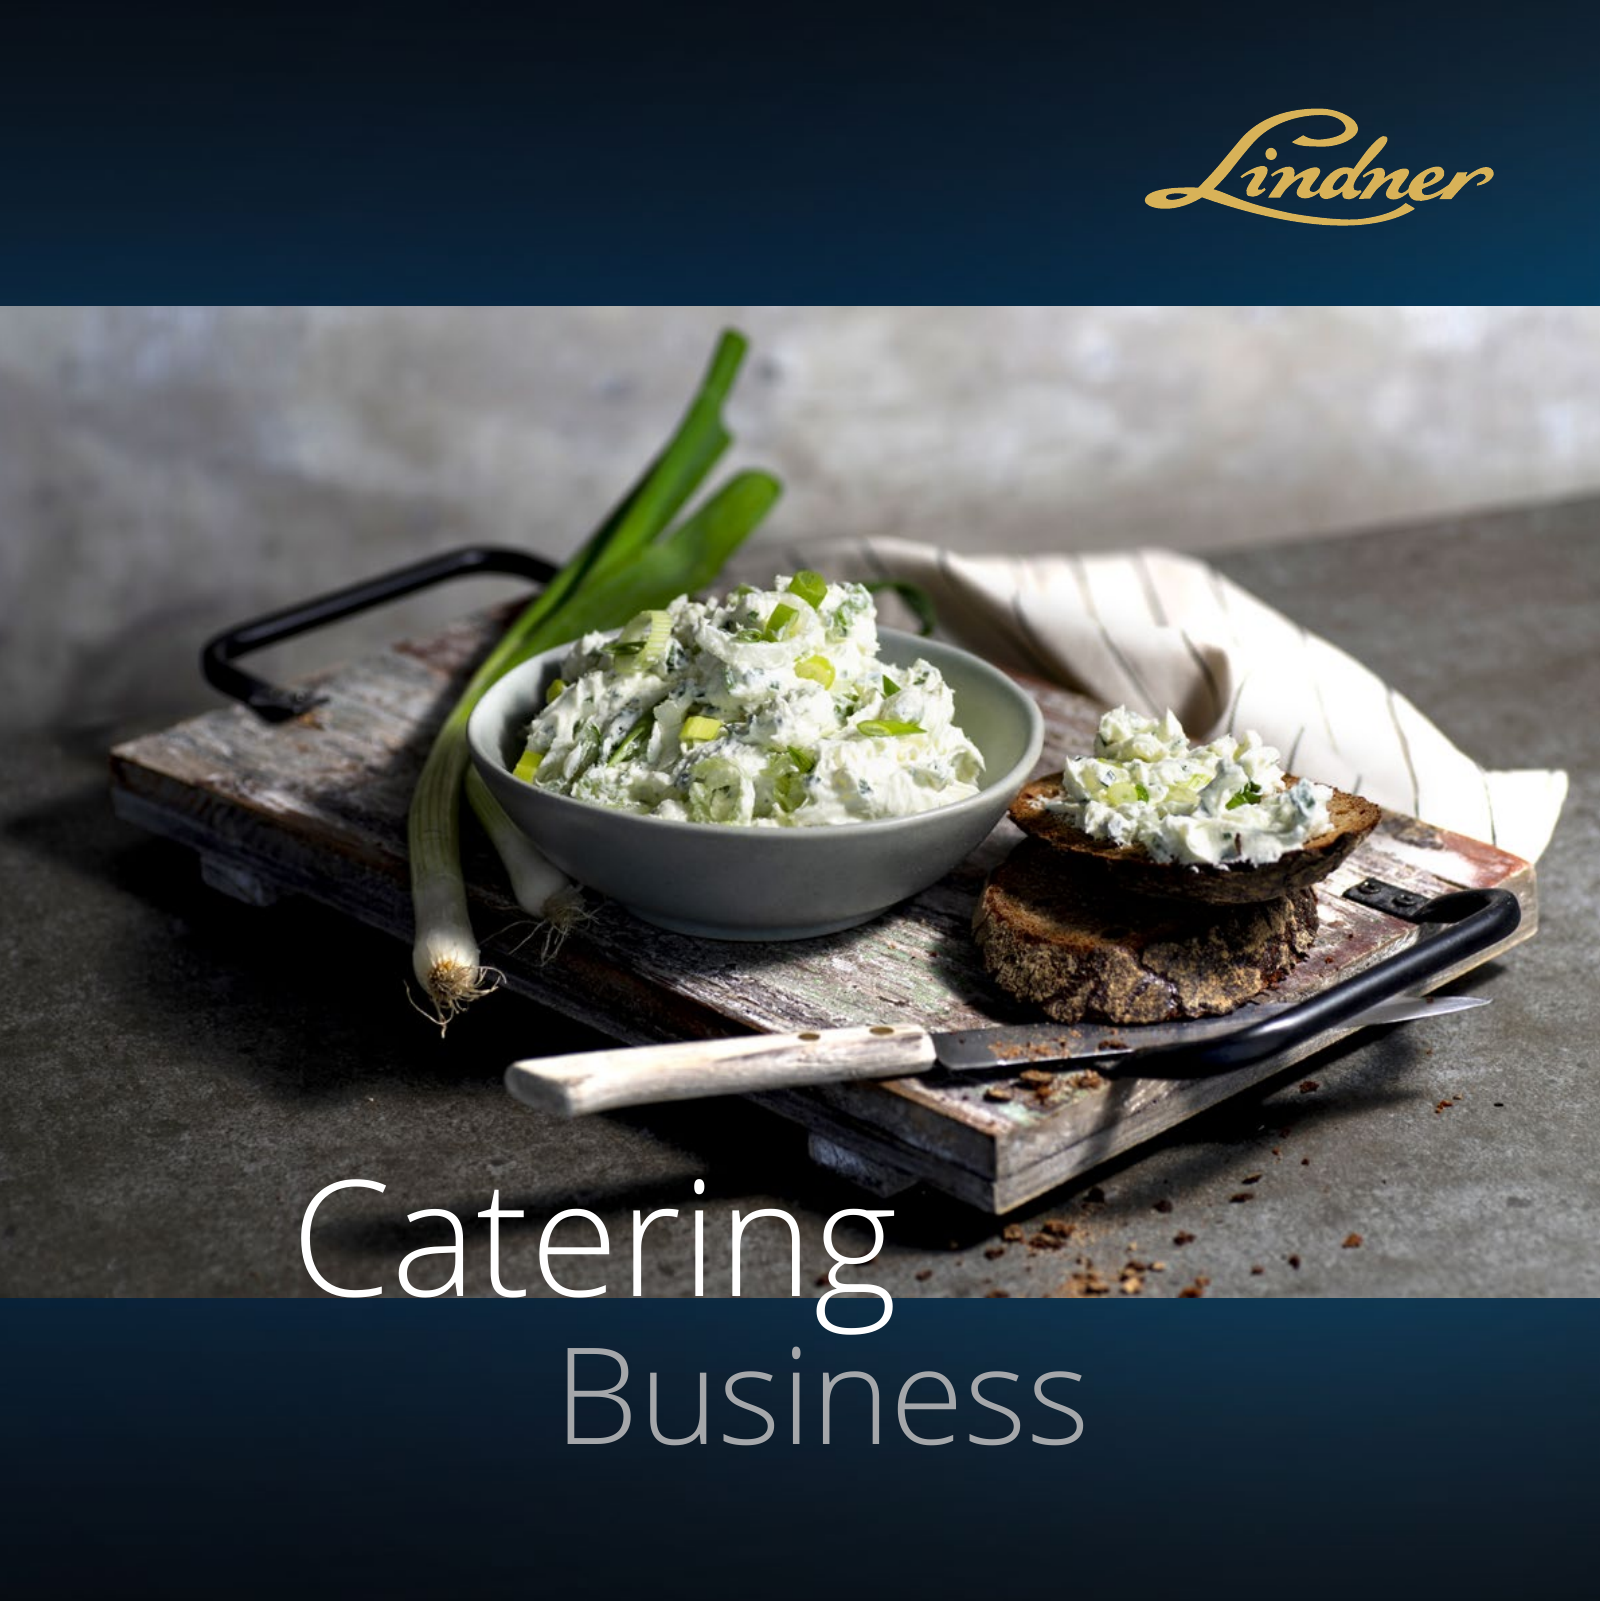 Vorschau Catering Katalog - Businesskunden 2020 Seite 1